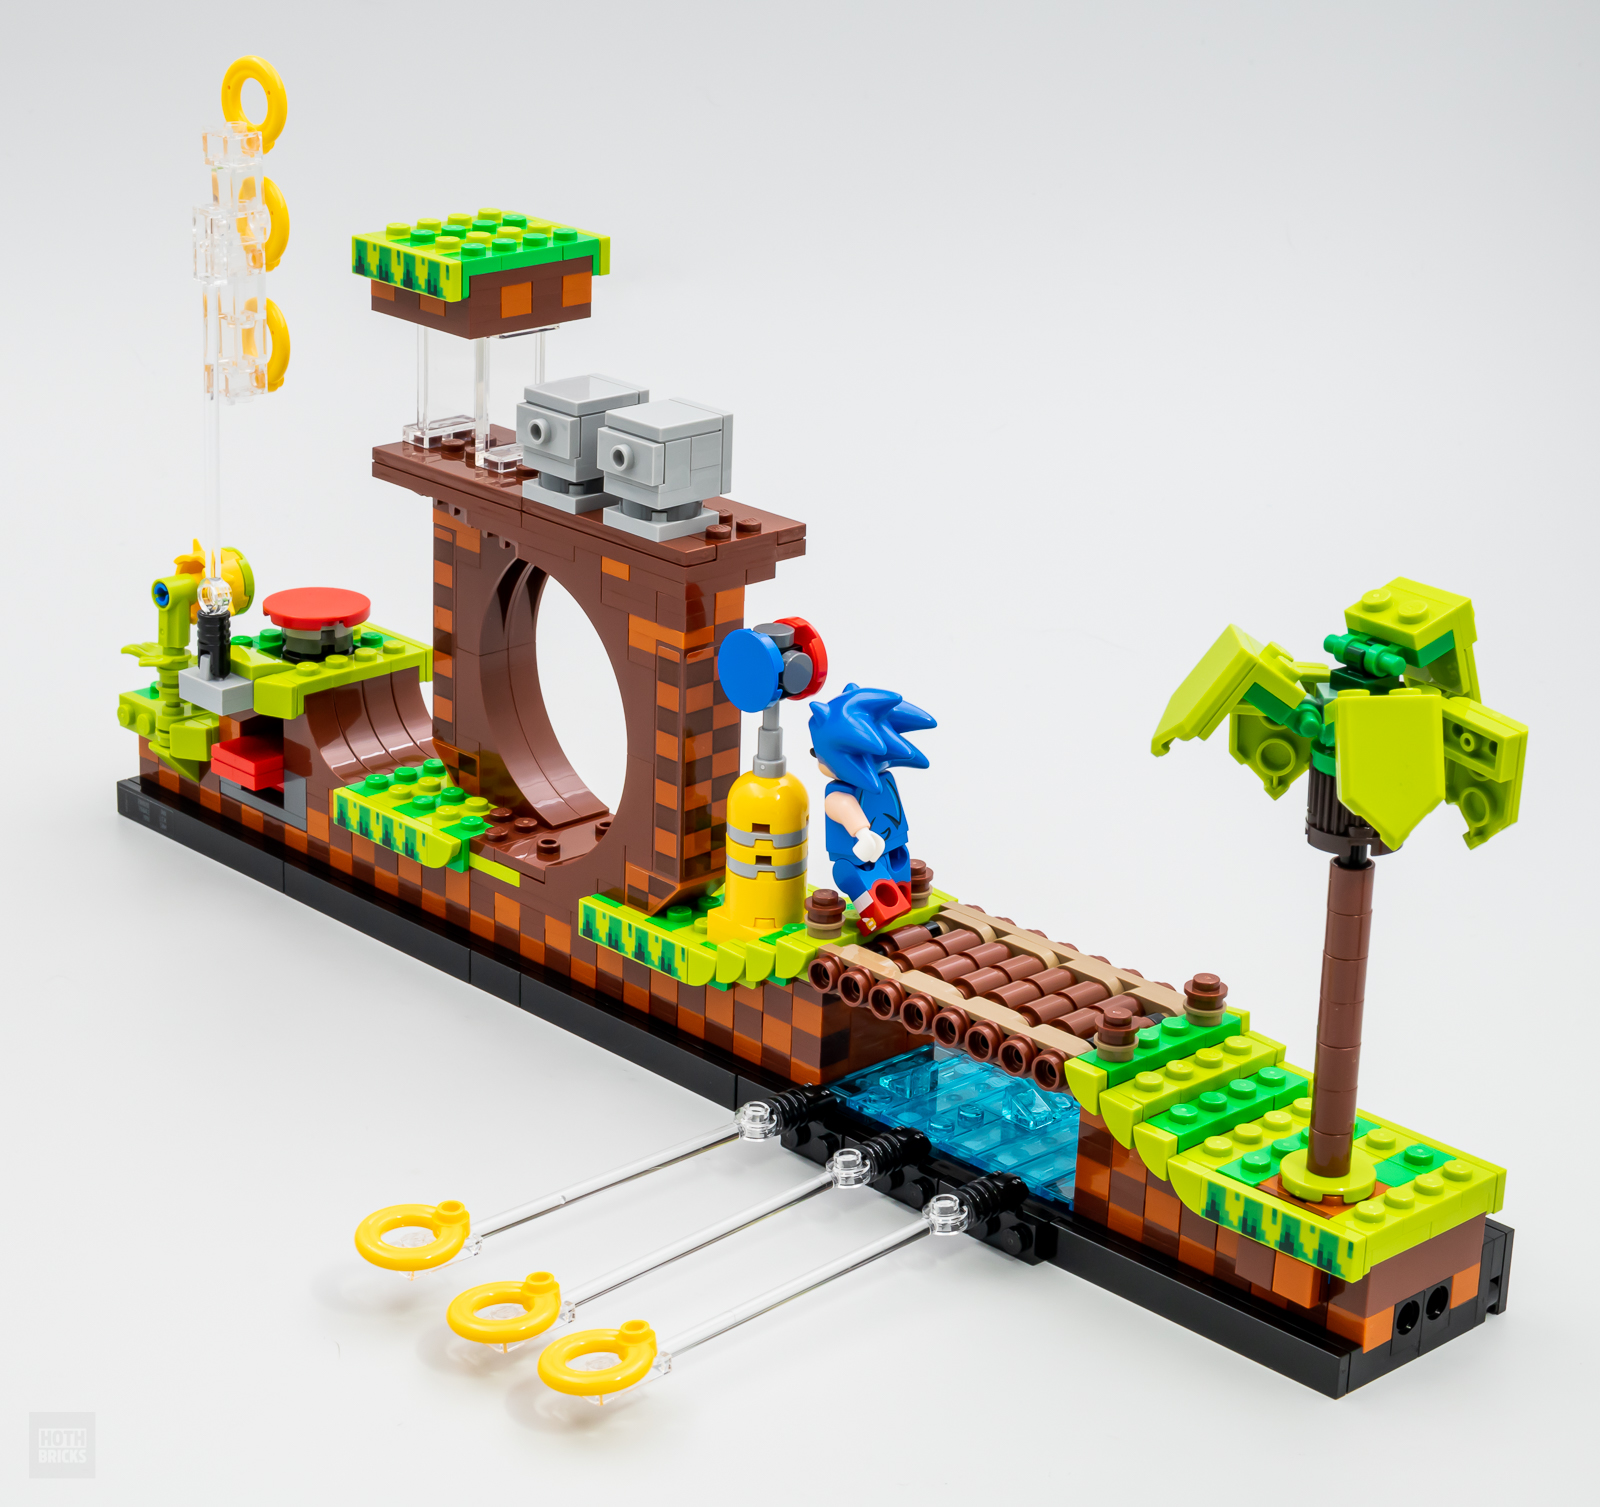 LEGO IDEAS - Sonic the Hedgehog Greenhill Lego